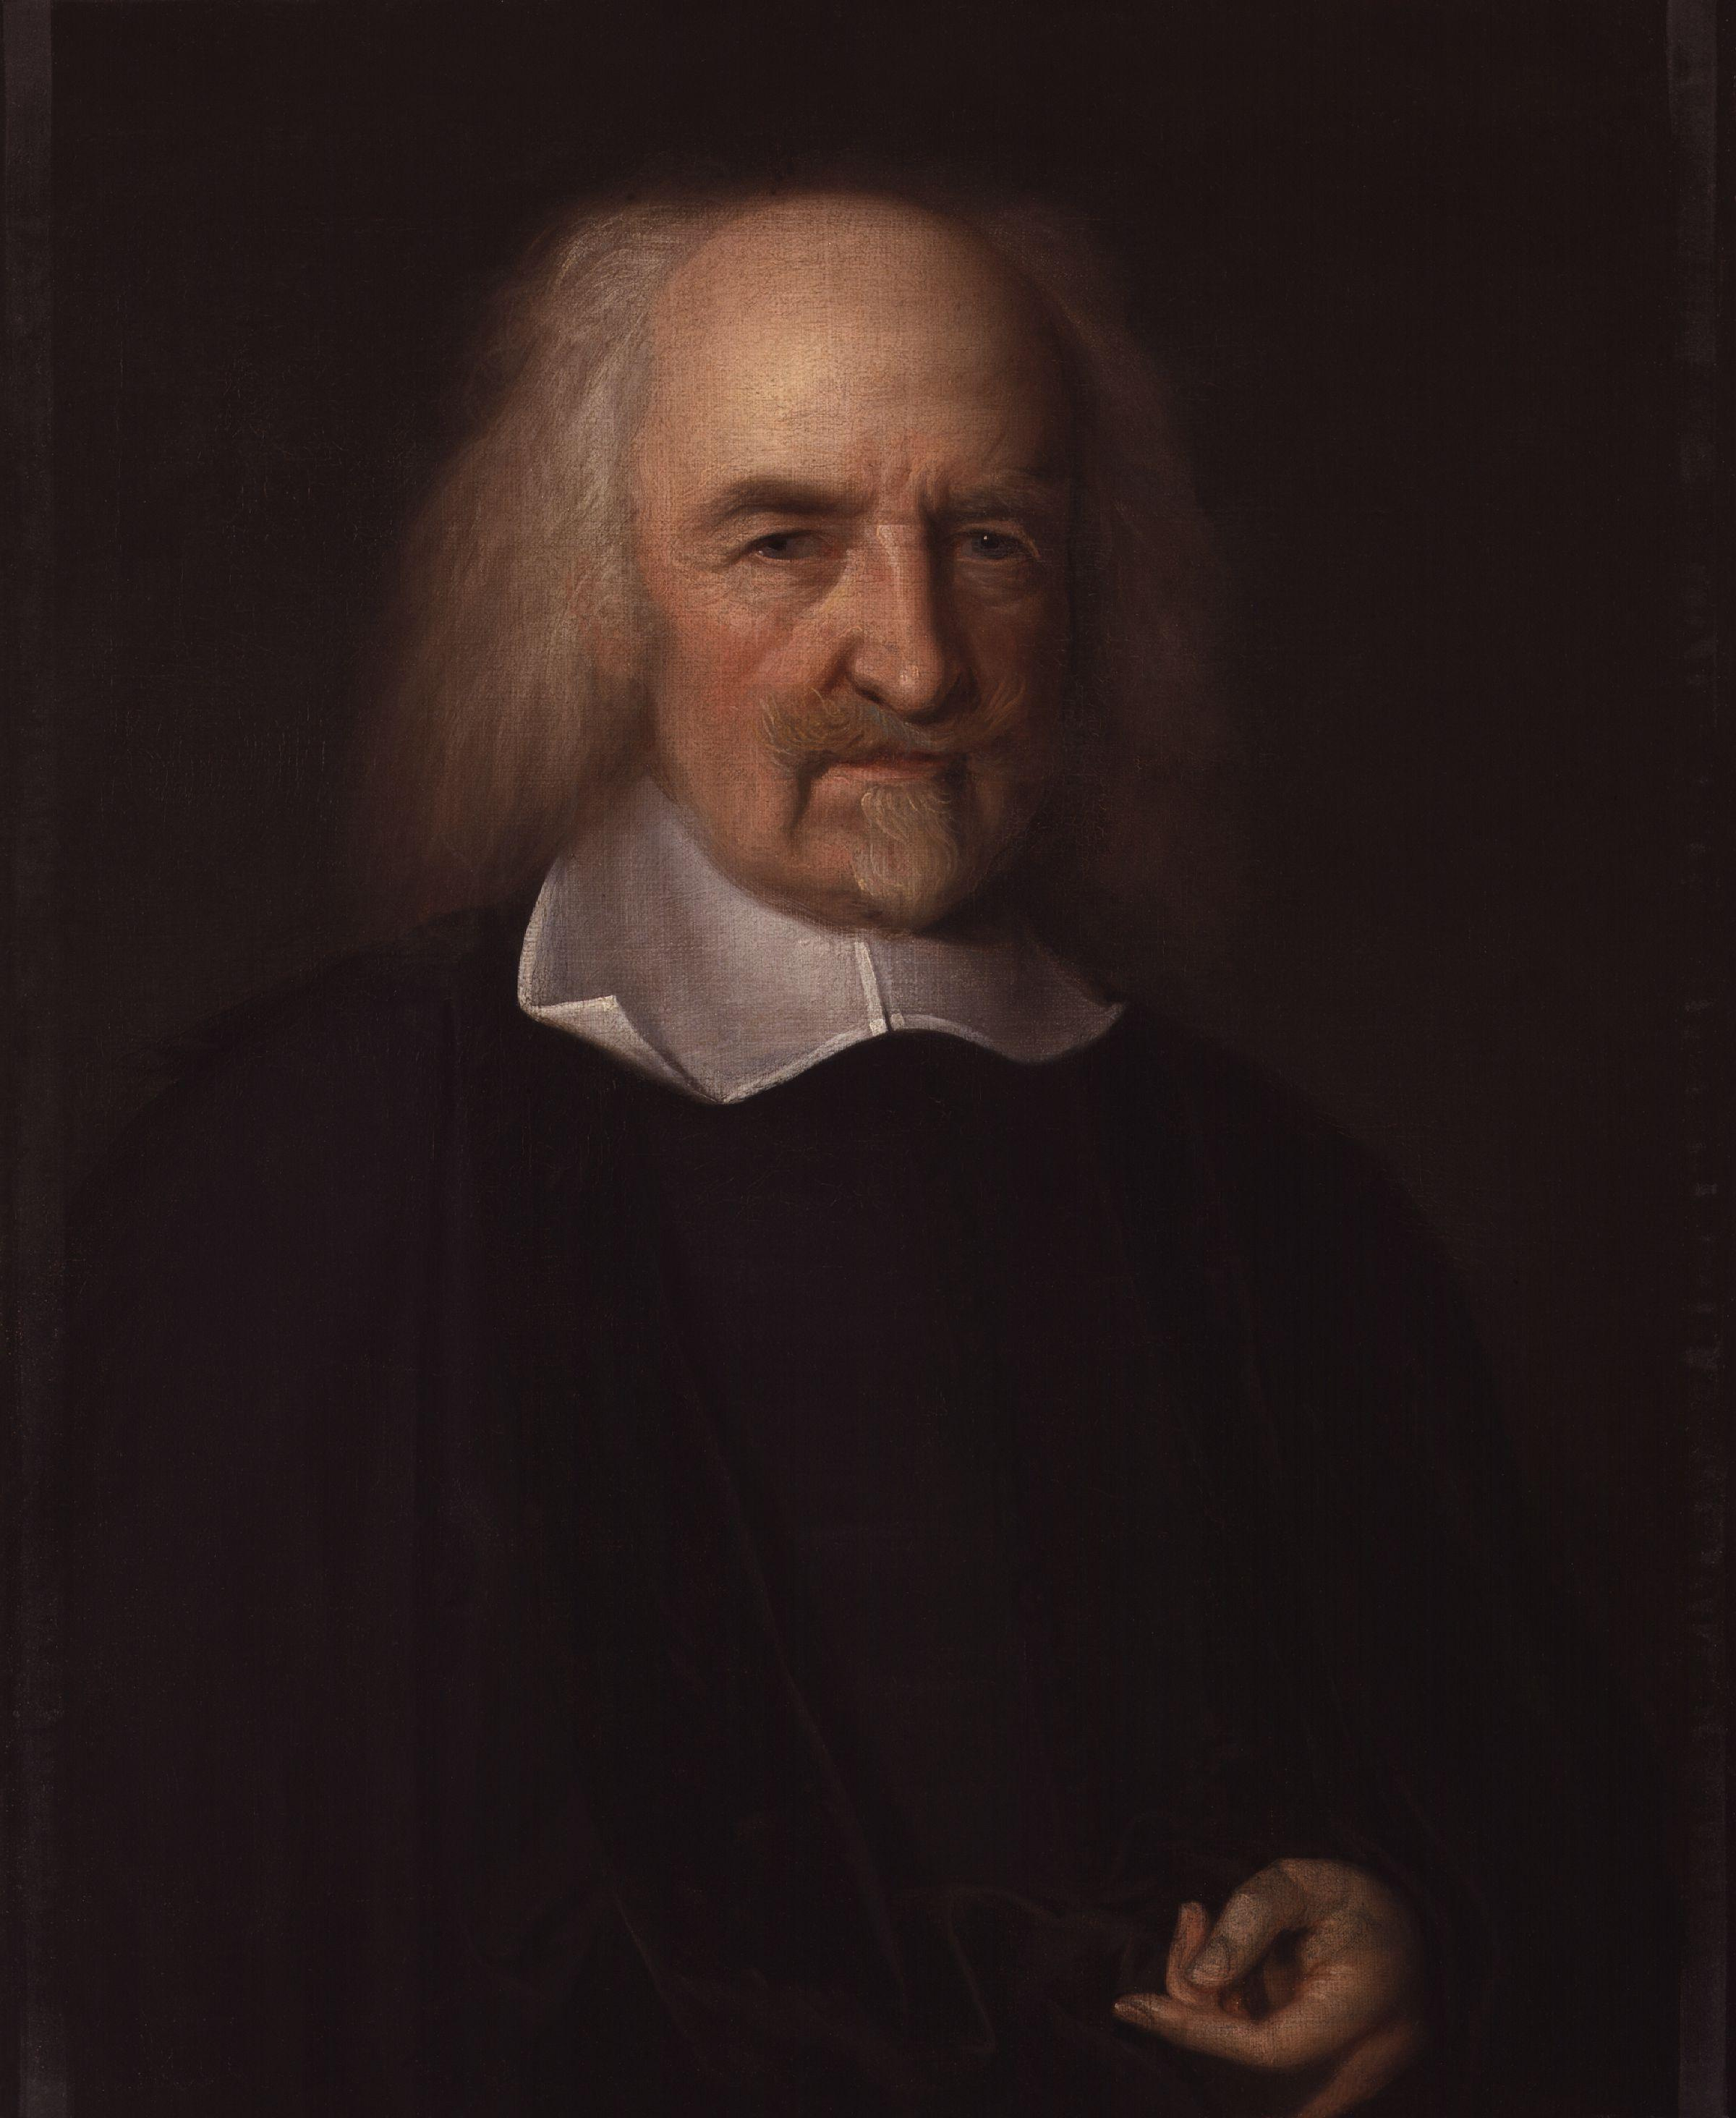  Talambuhay ni Thomas Hobbes